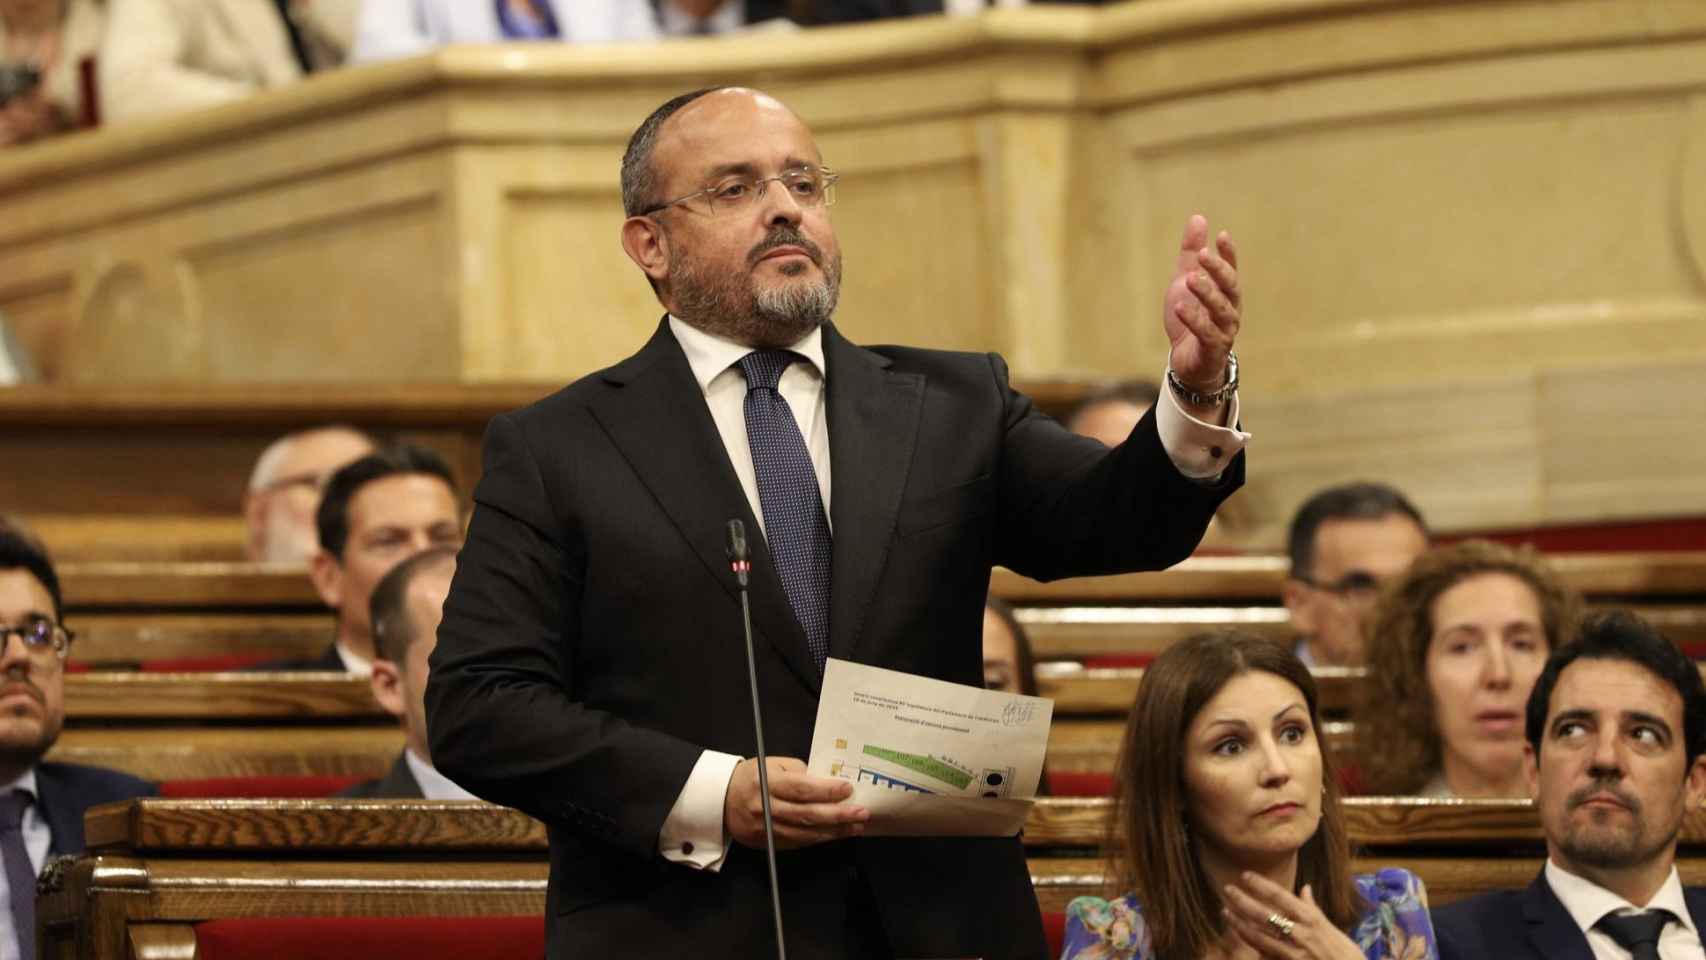 El líder del PP en el Parlament, Alejandro Fernández, anuncia que presentará un recurso de ampara en el Constitucional por los votos admitidos en la nueva legislatura